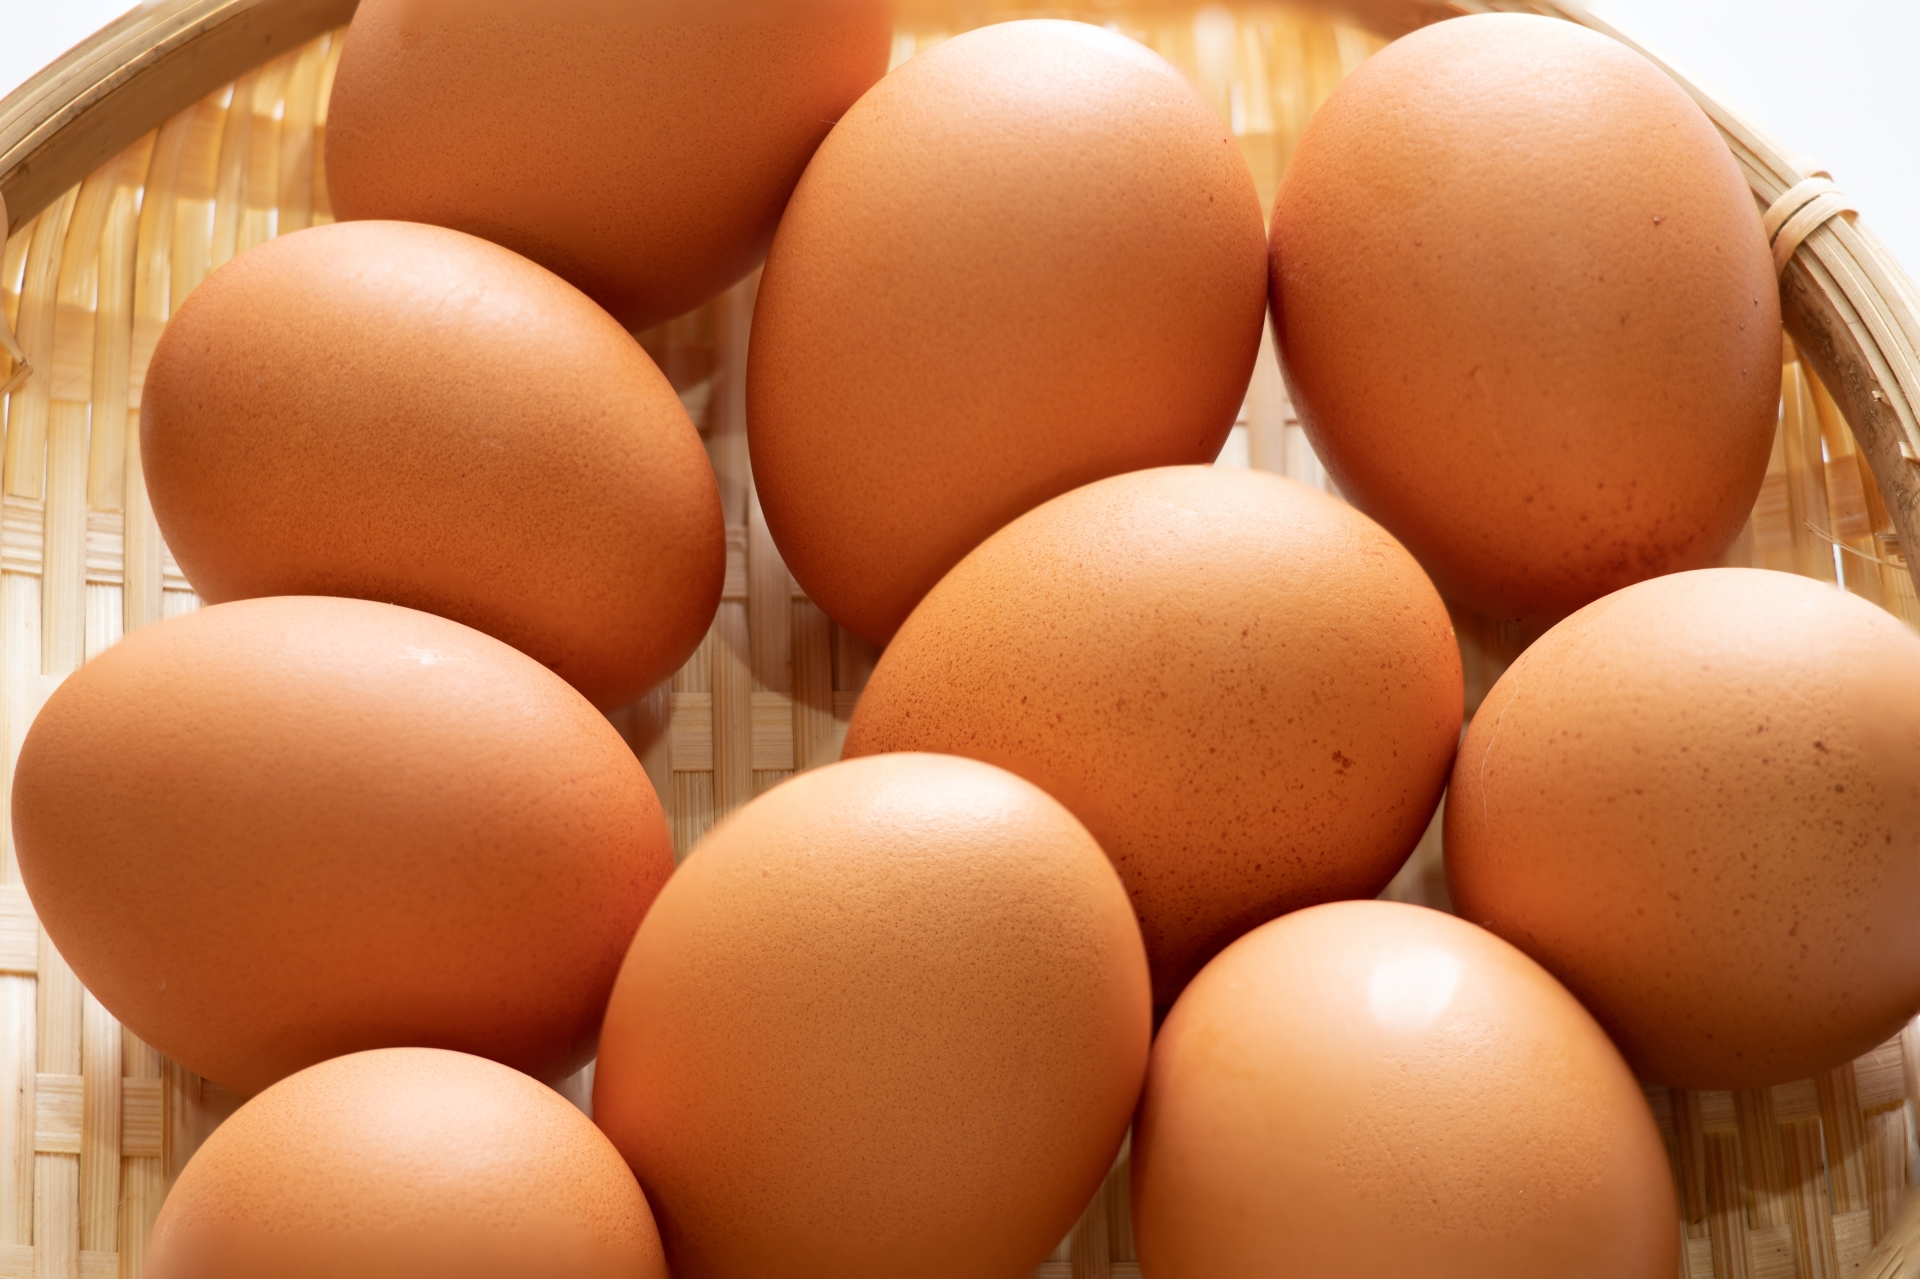 「大寒の卵」は、一年の健康と金運を呼ぶ縁起物の卵-インフォメーション|社長のブログ | 大熊養鶏場